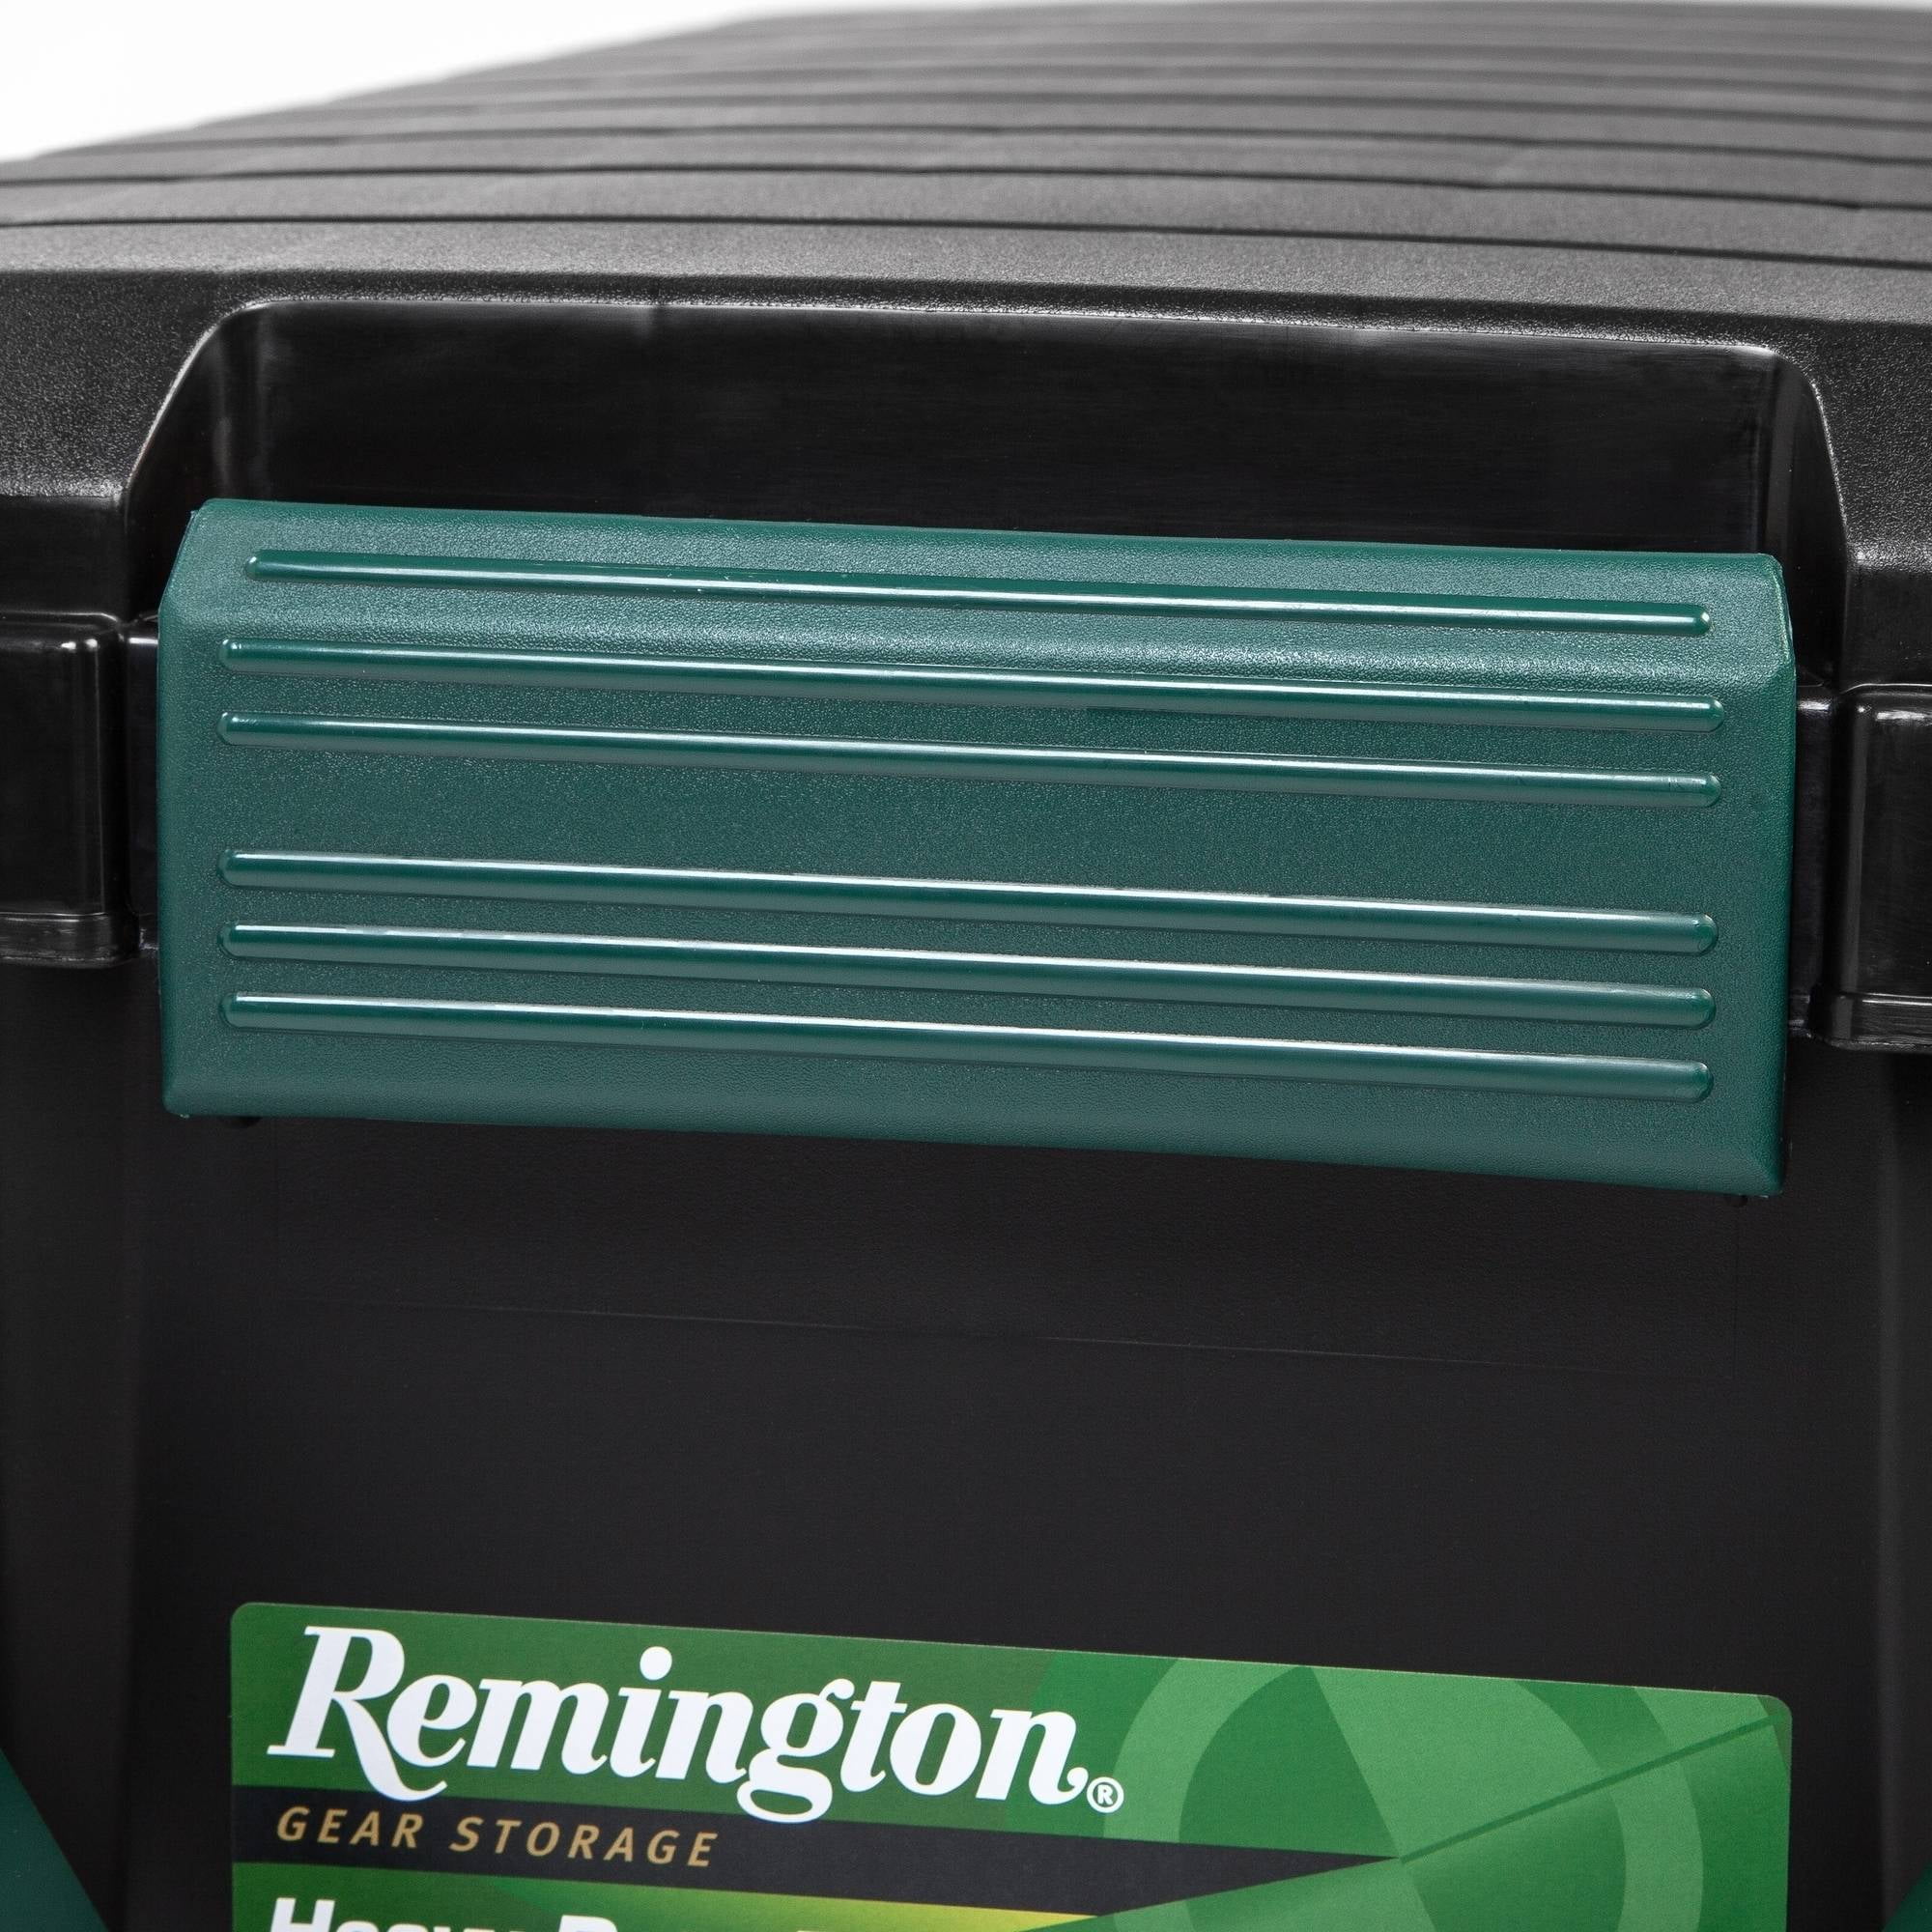 Remington 21.8 Gallon Weathertight Storage Tote